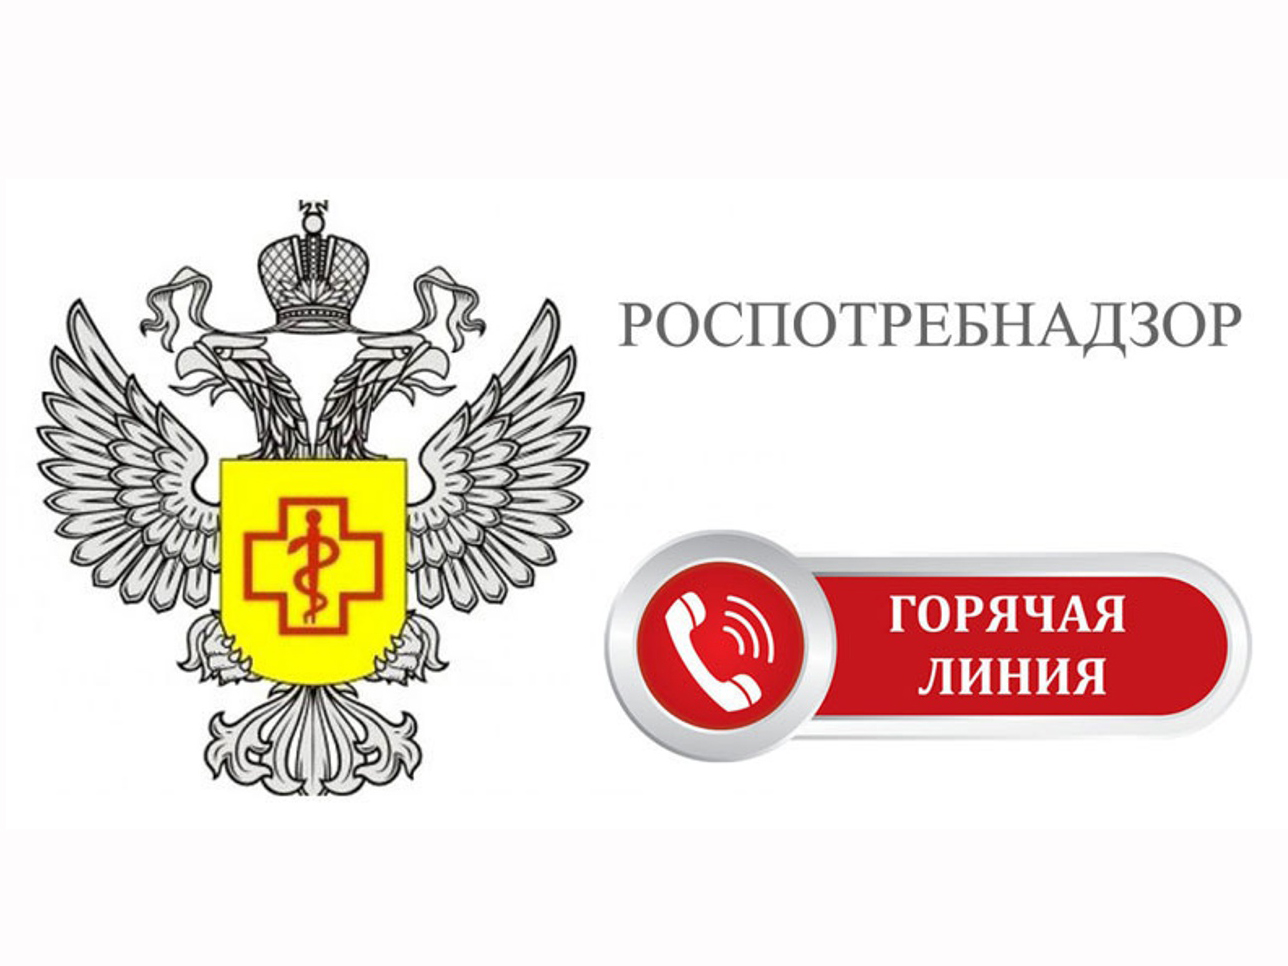 В Управлении Роспотребнадзора по Воронежской области открыли «горячую линию» по вопросам организации питания в школах.